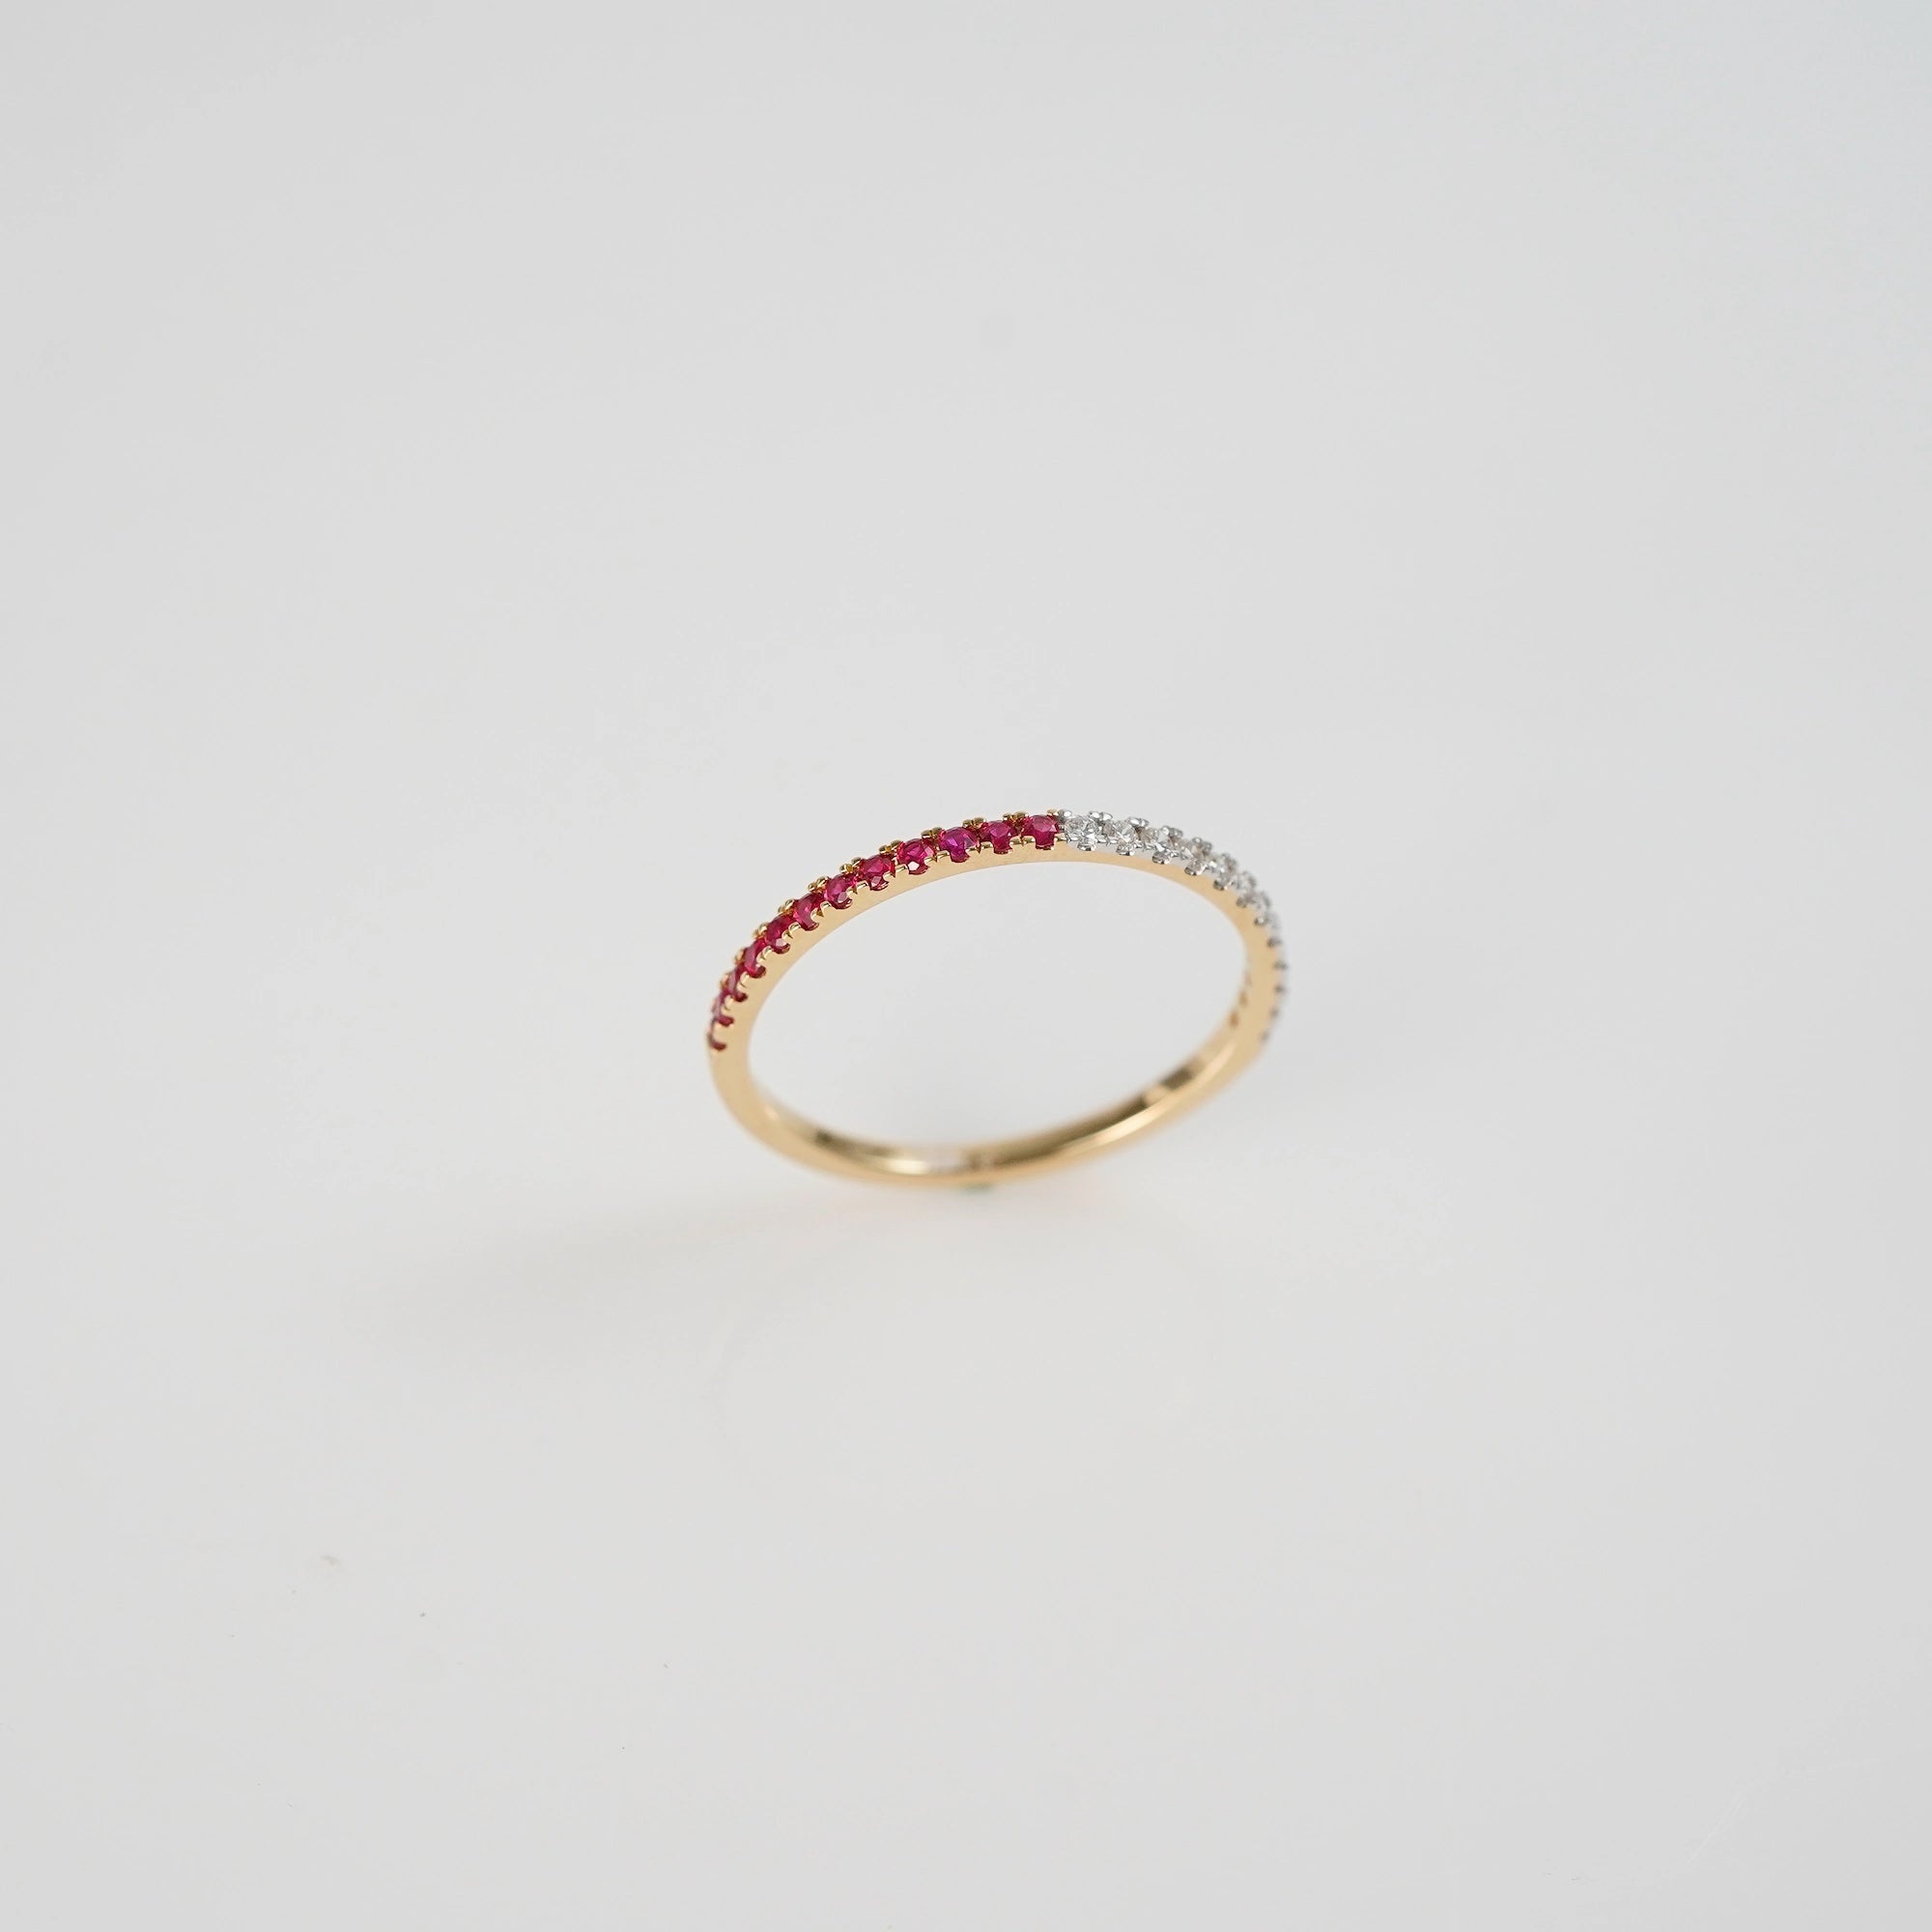 Produktfoto des stehenden Memoire Rings aus der Schmuckatelier Lang Collection, der halb mit Rubinen und halb mit Diamanten besetzt ist